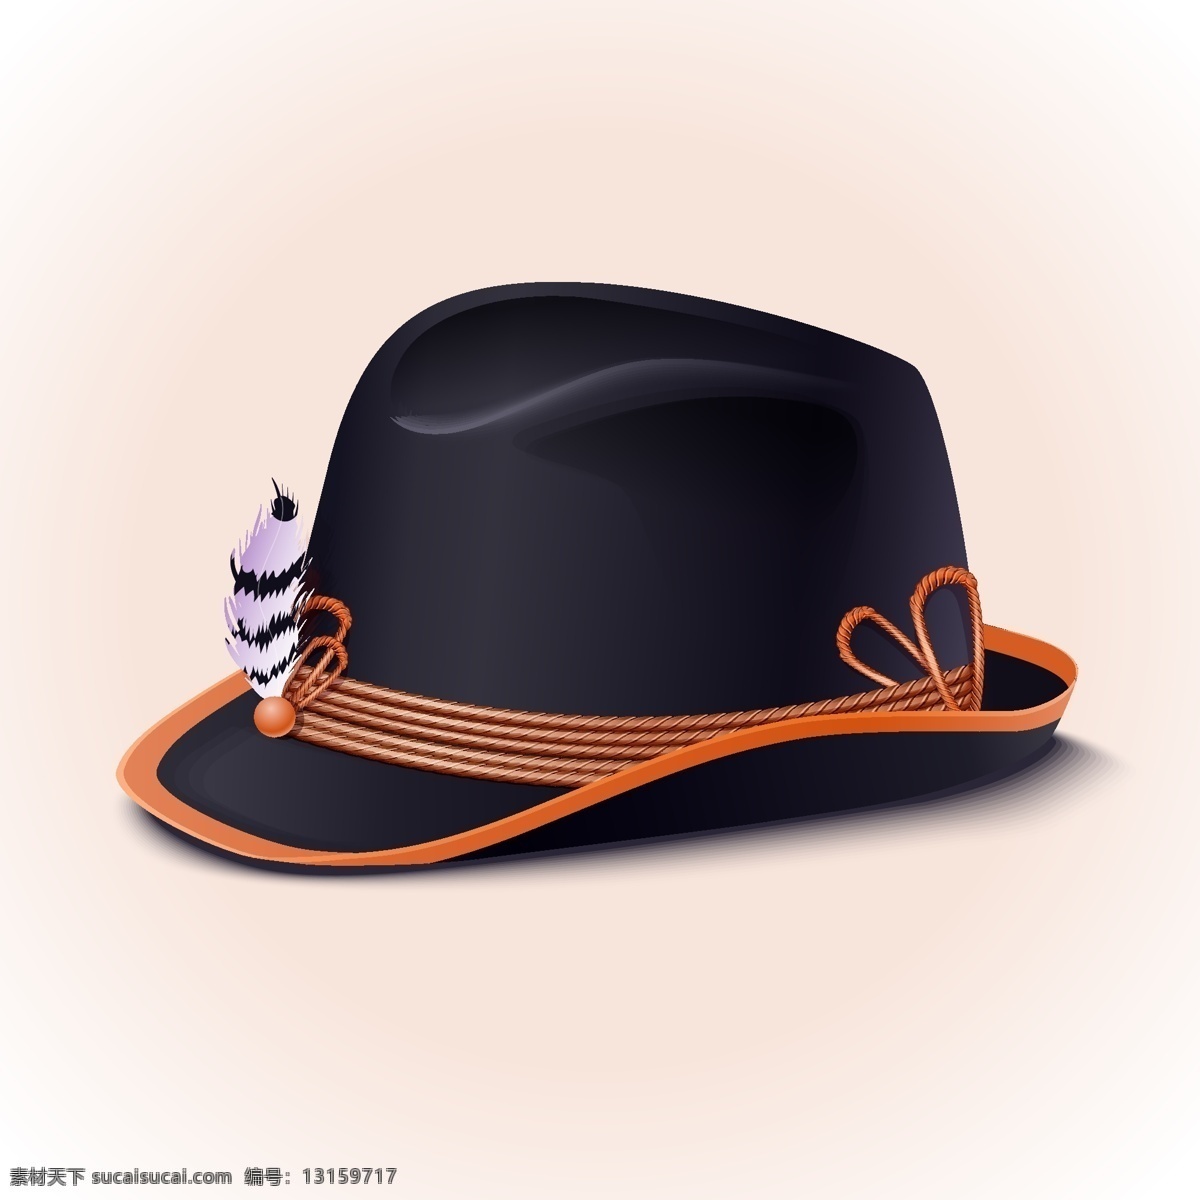 帽子图片 帽子 卡通帽子 手绘帽子 饰品 插图 插画 ai矢量 剪影图片